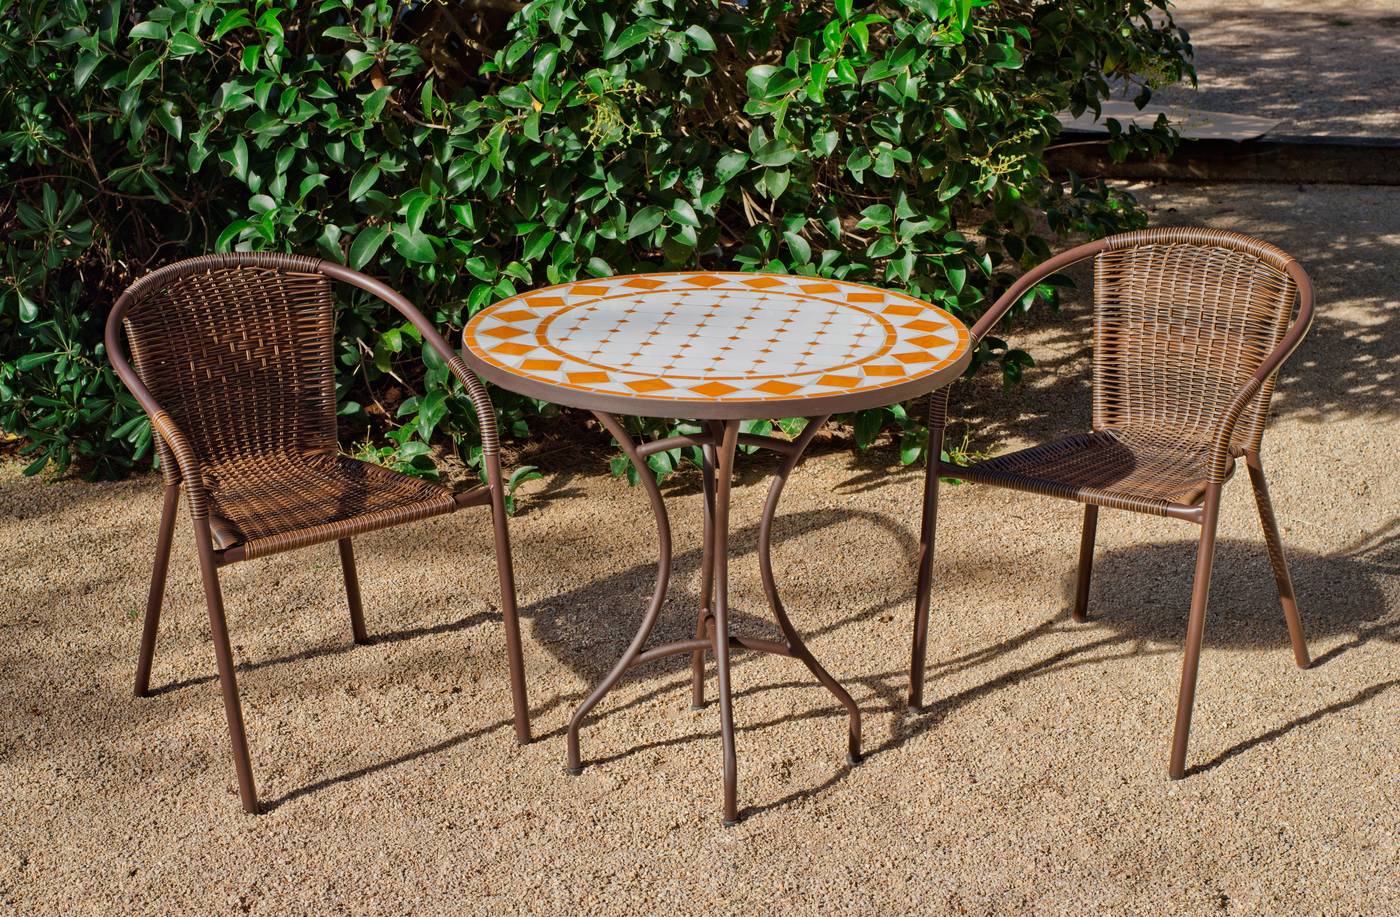 Conjunto para jardín y terraza de forja: 1 mesa con panel mosaico + 2 sillones de wicker